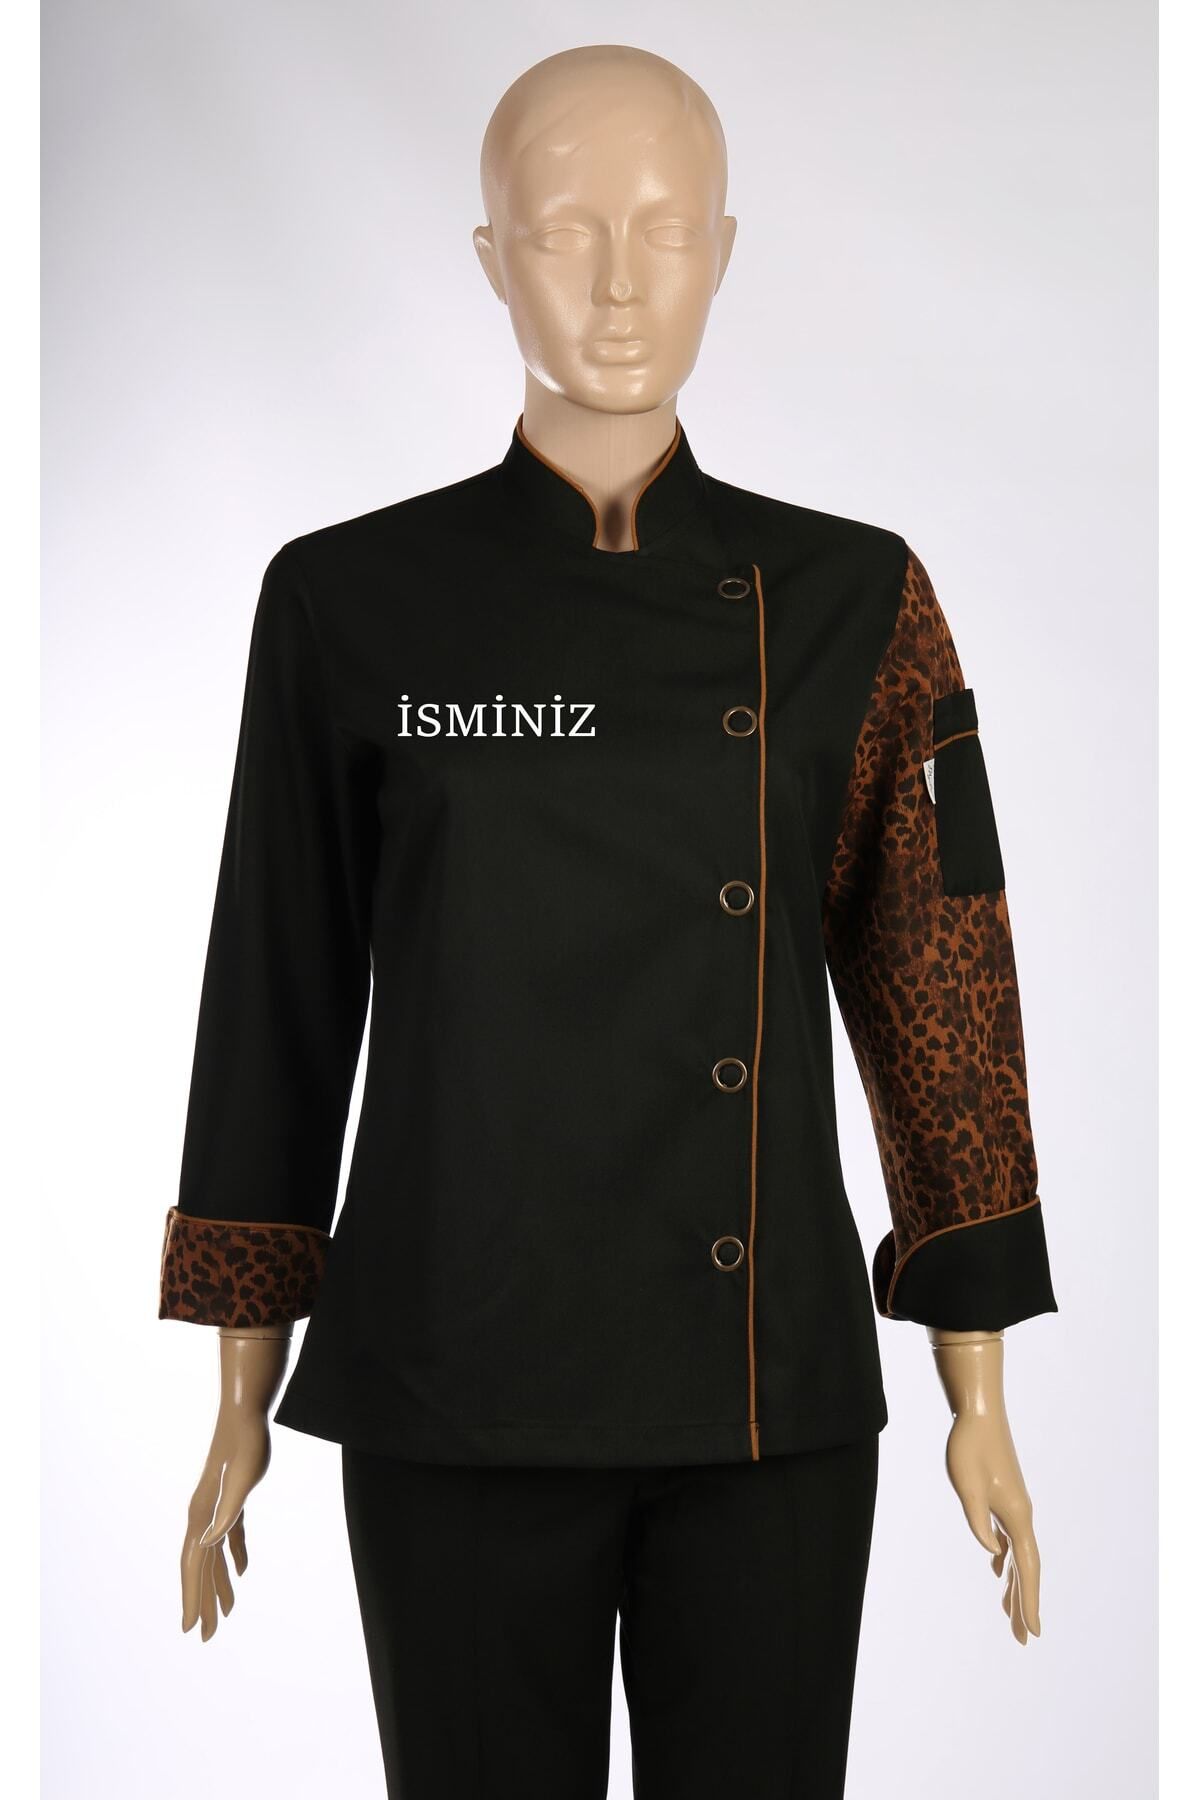 My Chef Şef Ceketi Siyah Leopar Desenli Zena Yaka Kadın Aşçı Kıyafeti